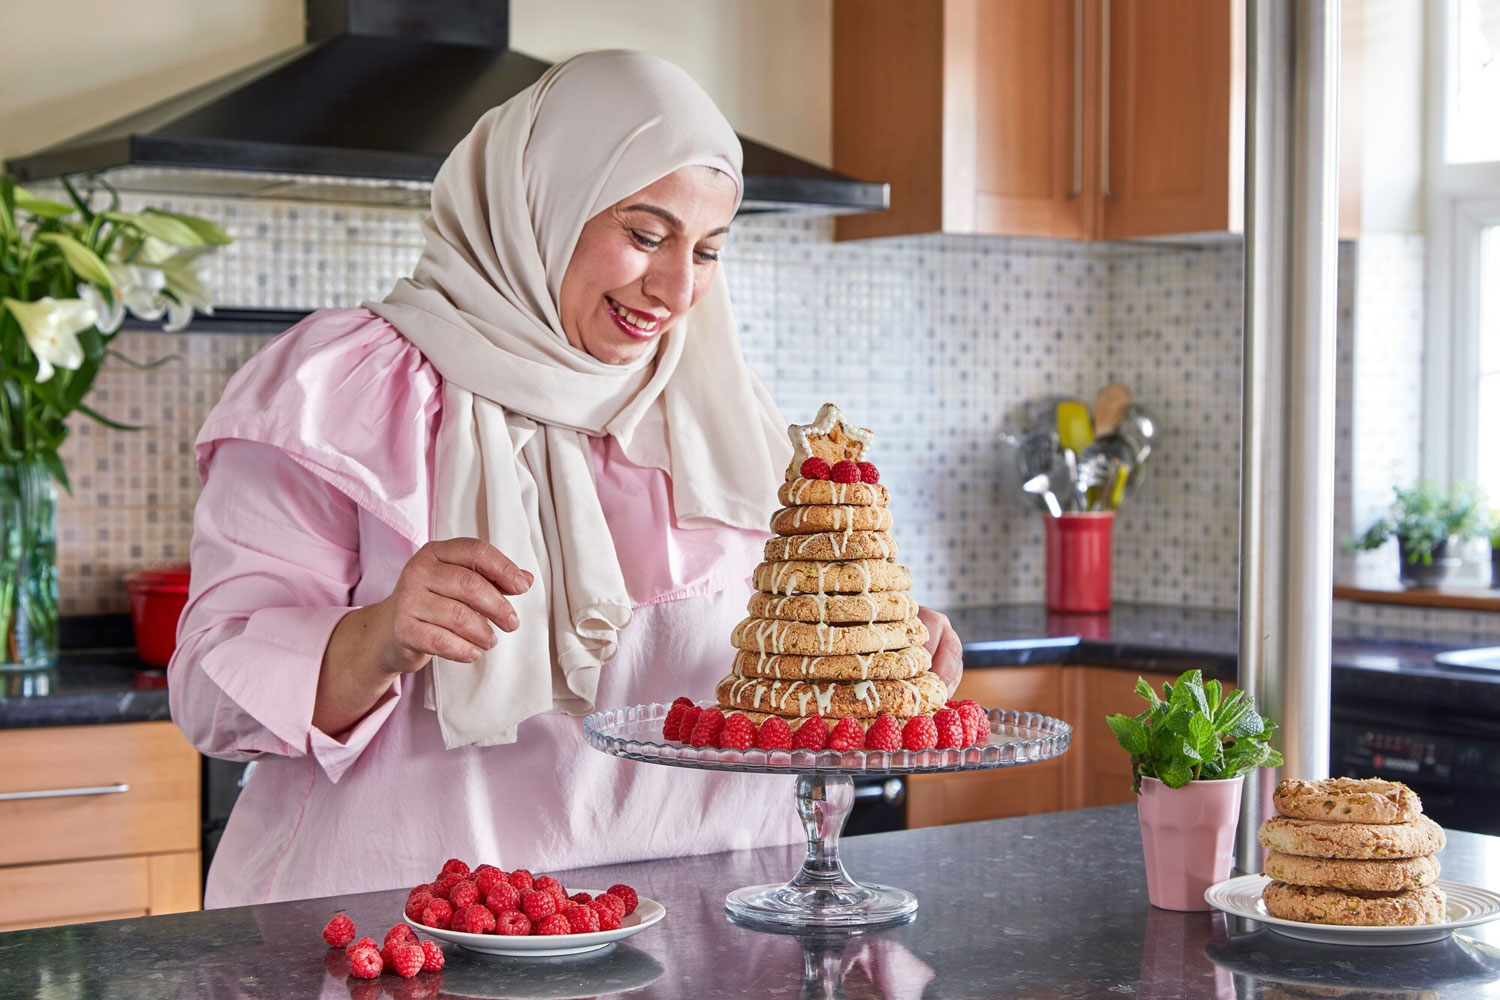 لينا سعد المتوجة بجائزة غورماند العالمية لكتاب الطهي في الموعد